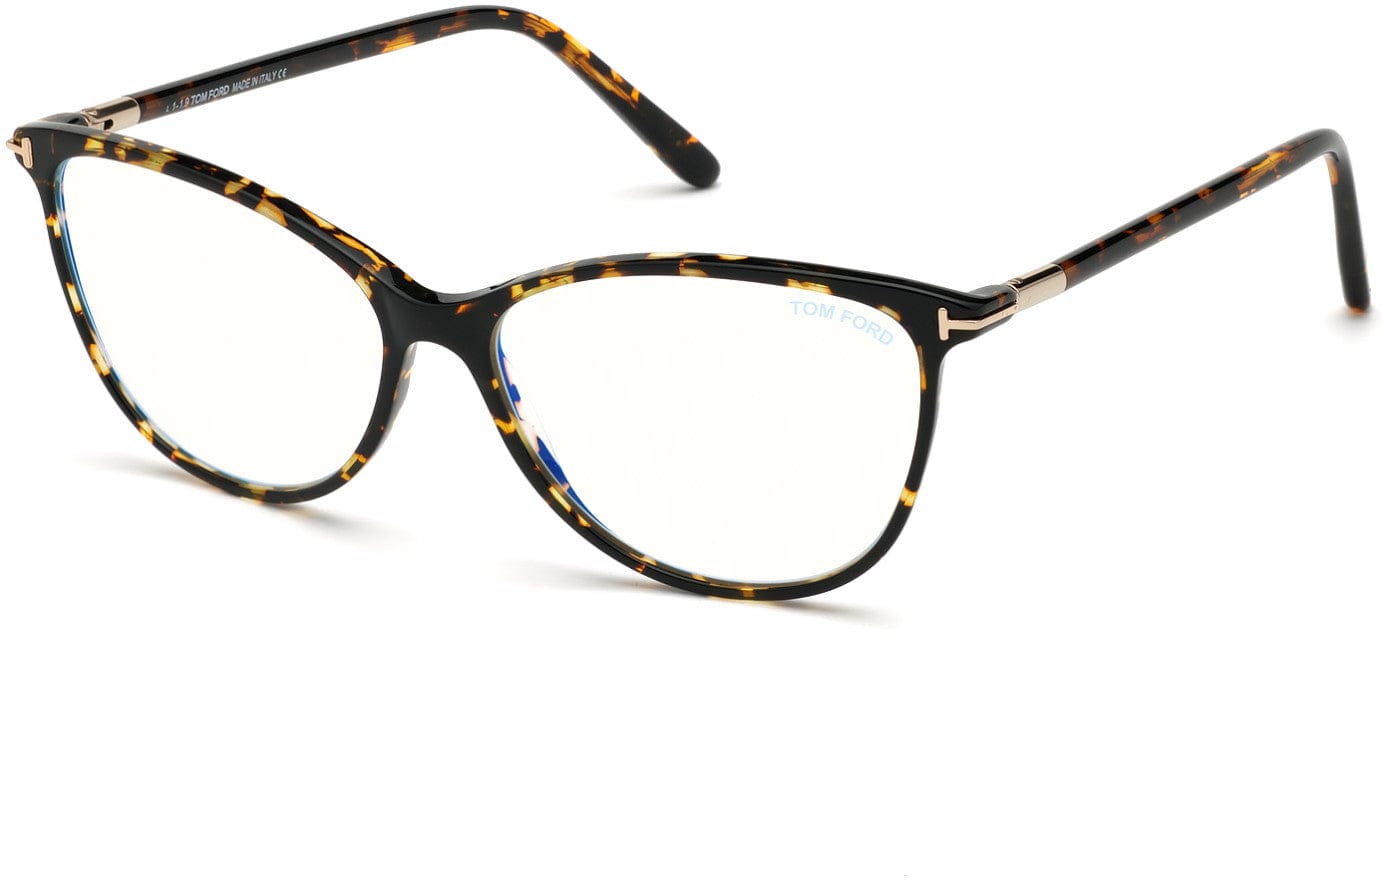 Tom Ford FT5616-B Square Eyeglasses 056-056 - Shiny Dark Havana W. Shiny Rose Gold Details/ Blue Block Lenses